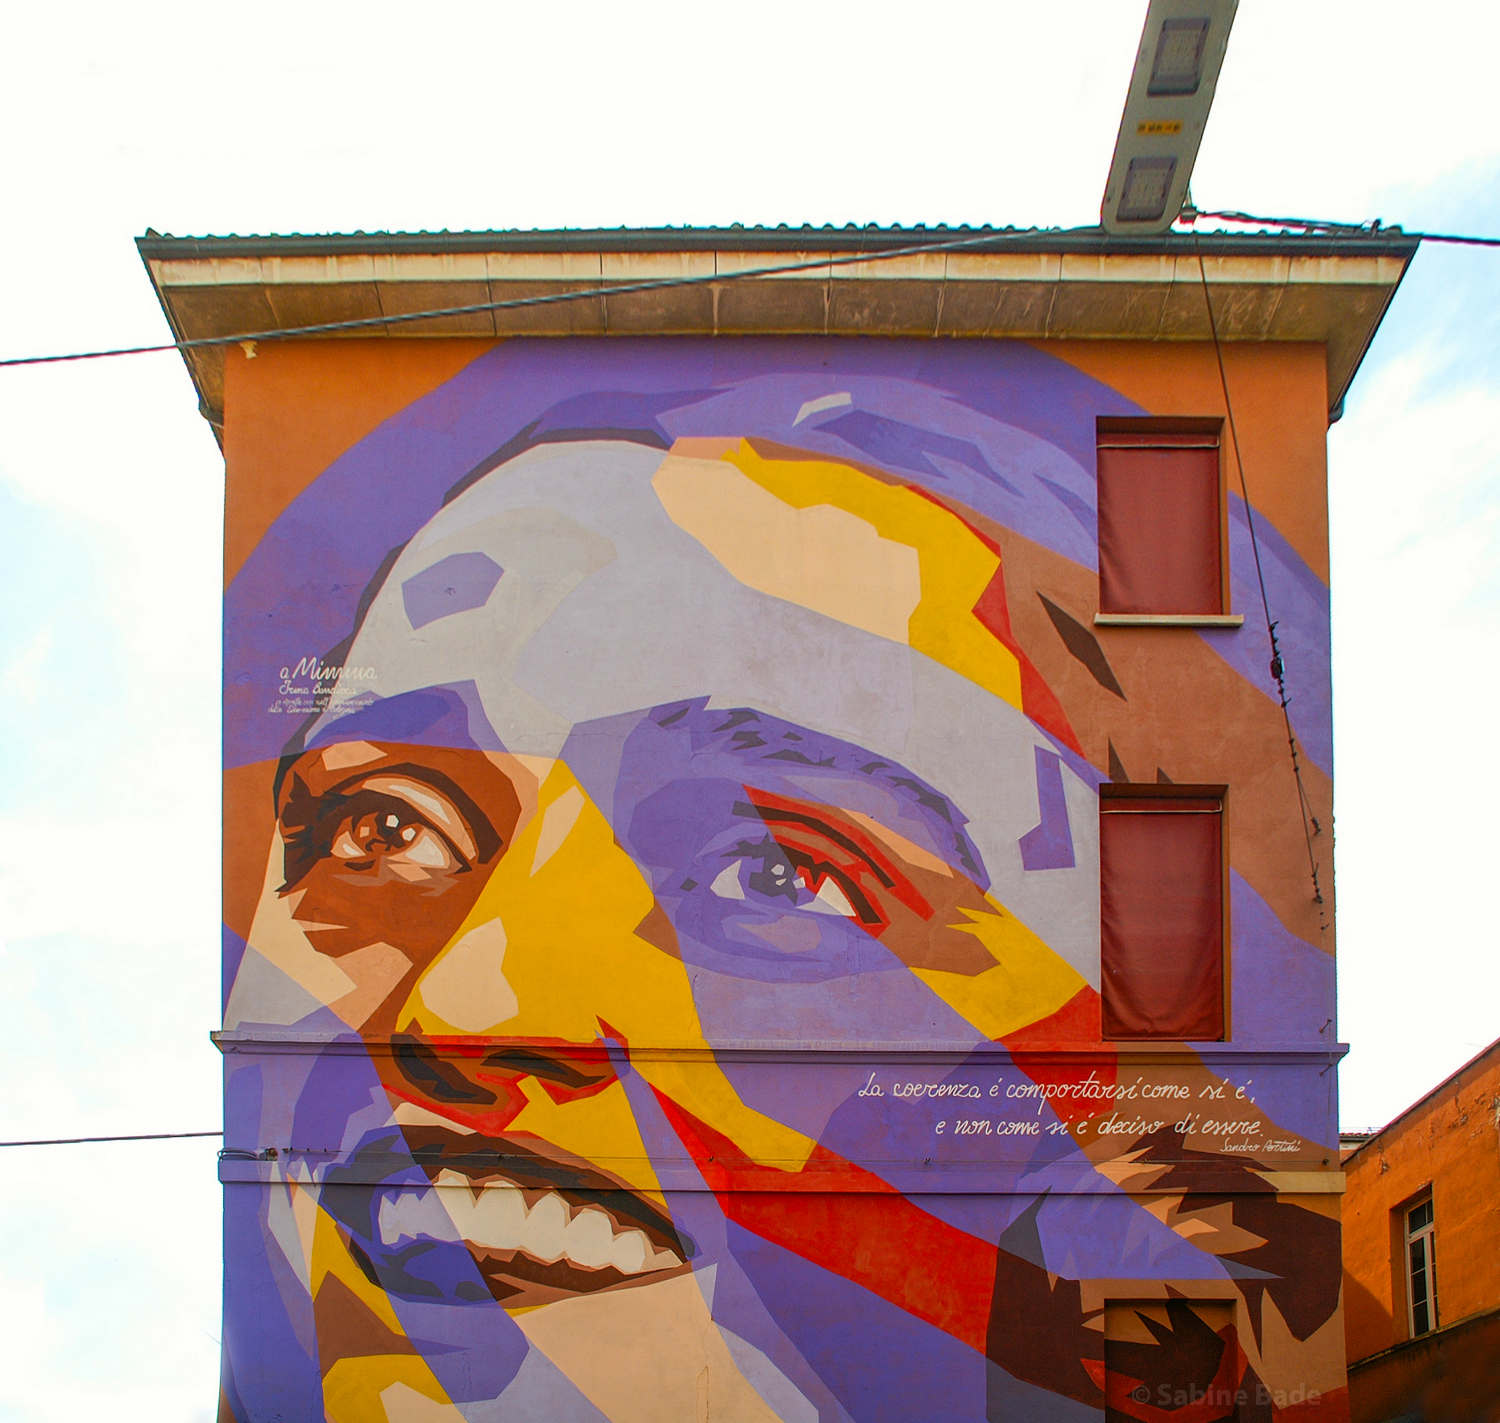 Irma Bandiera - Wandgemälde an der Fassade der Grundschule Luigi Bombicci in der Via Turati, Bologna. Foto: Sabine Bade